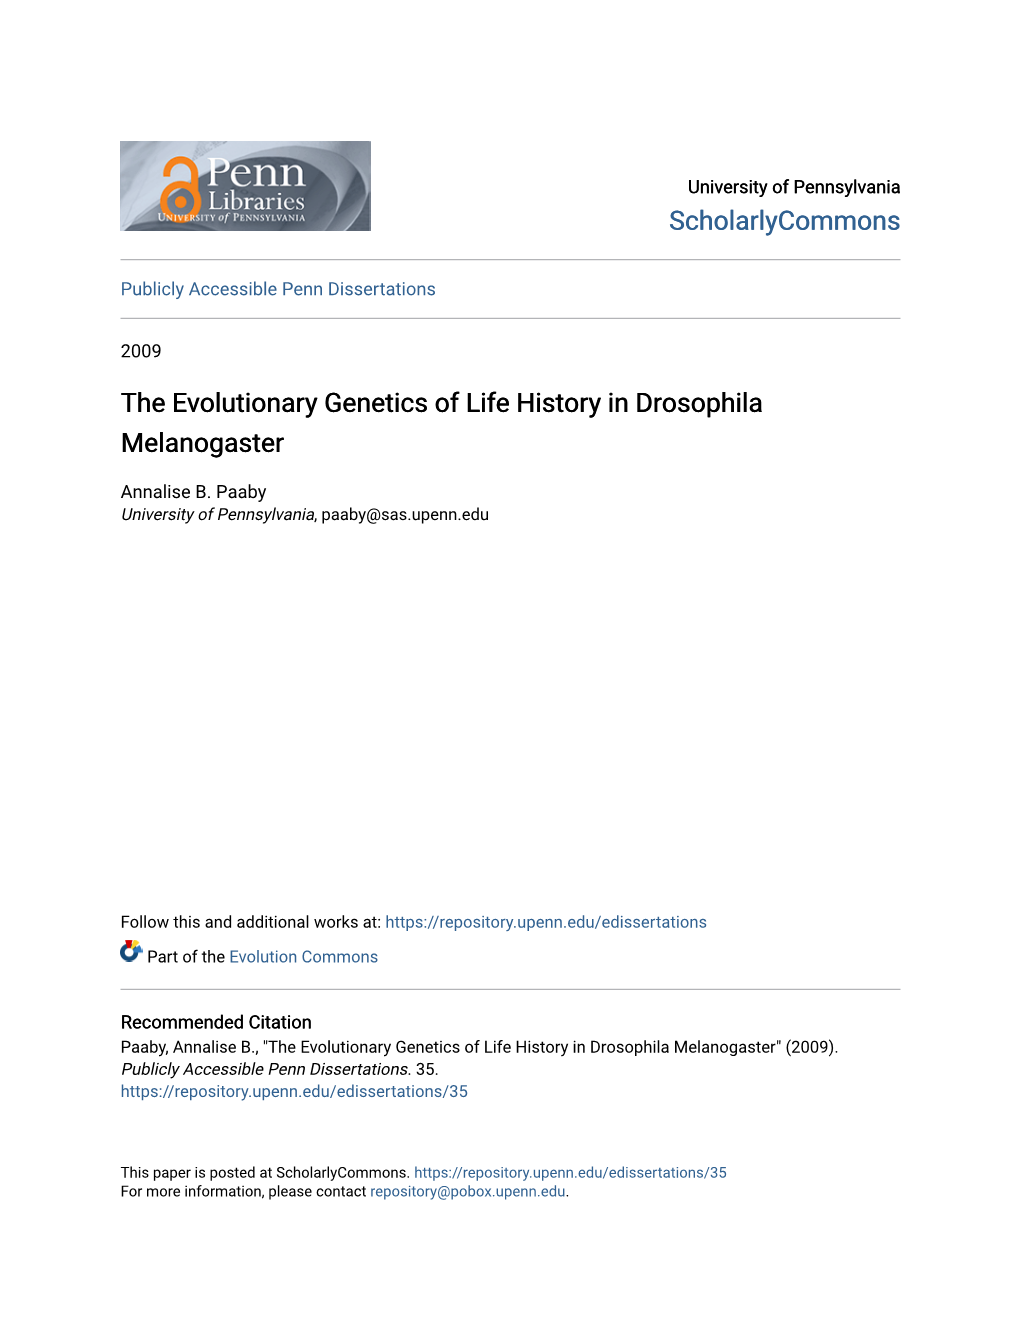 The Evolutionary Genetics of Life History in Drosophila Melanogaster